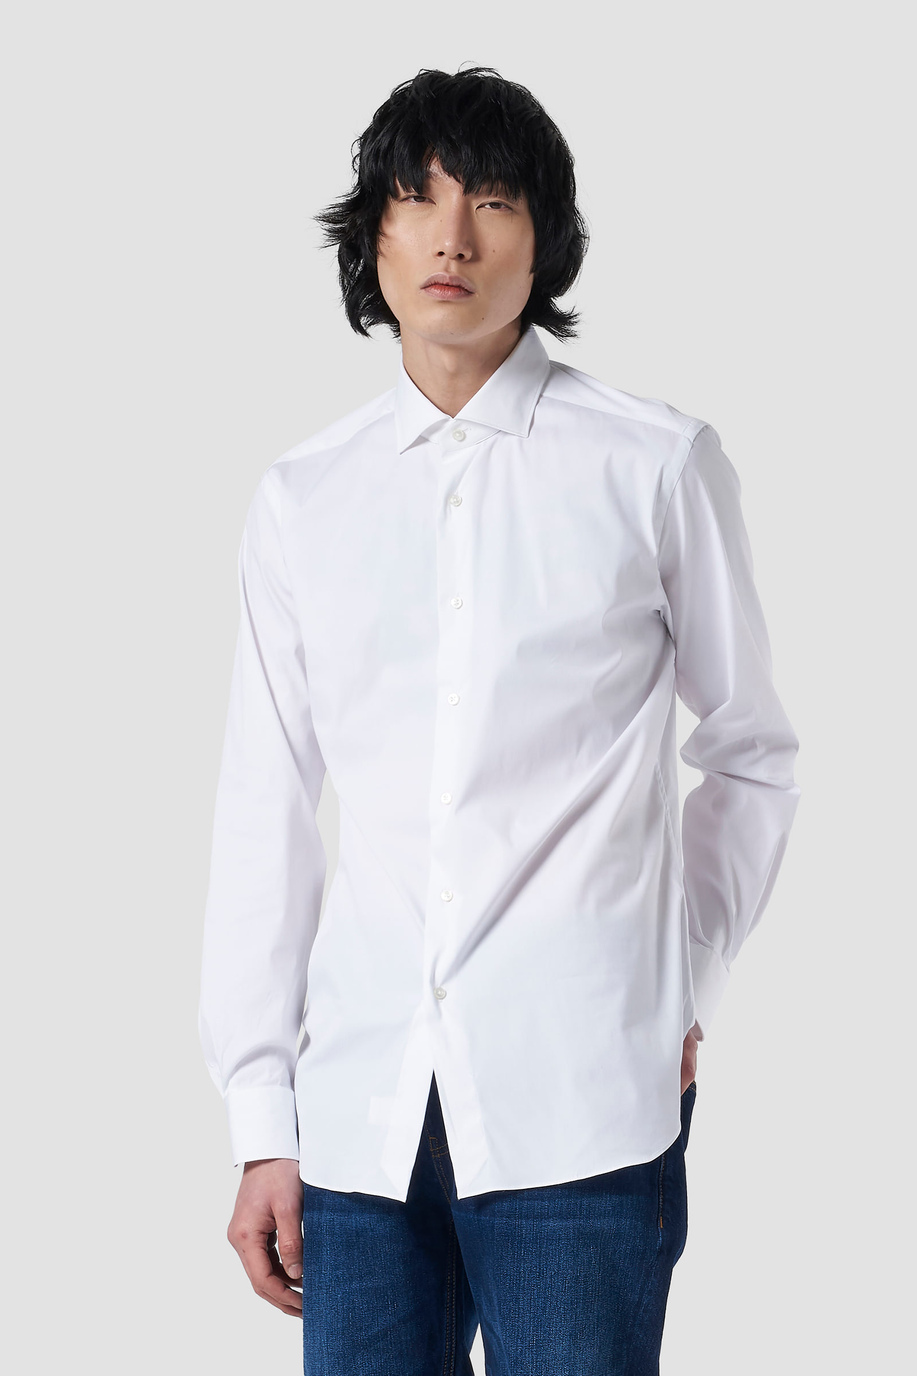 Plain-coloured cotton shirt - BP + BR + CC (all seasons - never on sale) | La Martina - Official Online Shop